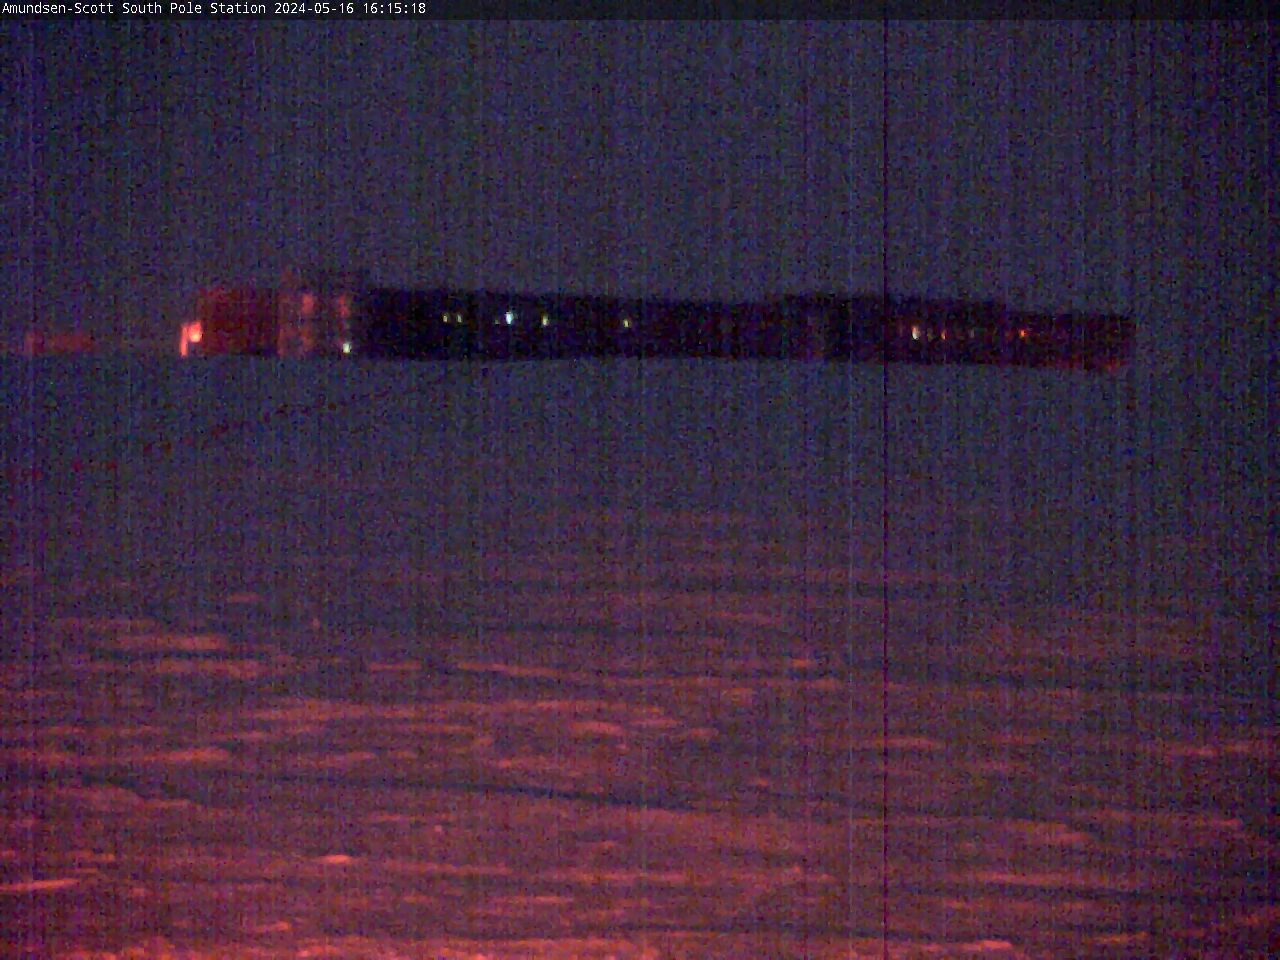 South Pole Station - Amundsen-Scott South Pole Station Webcam